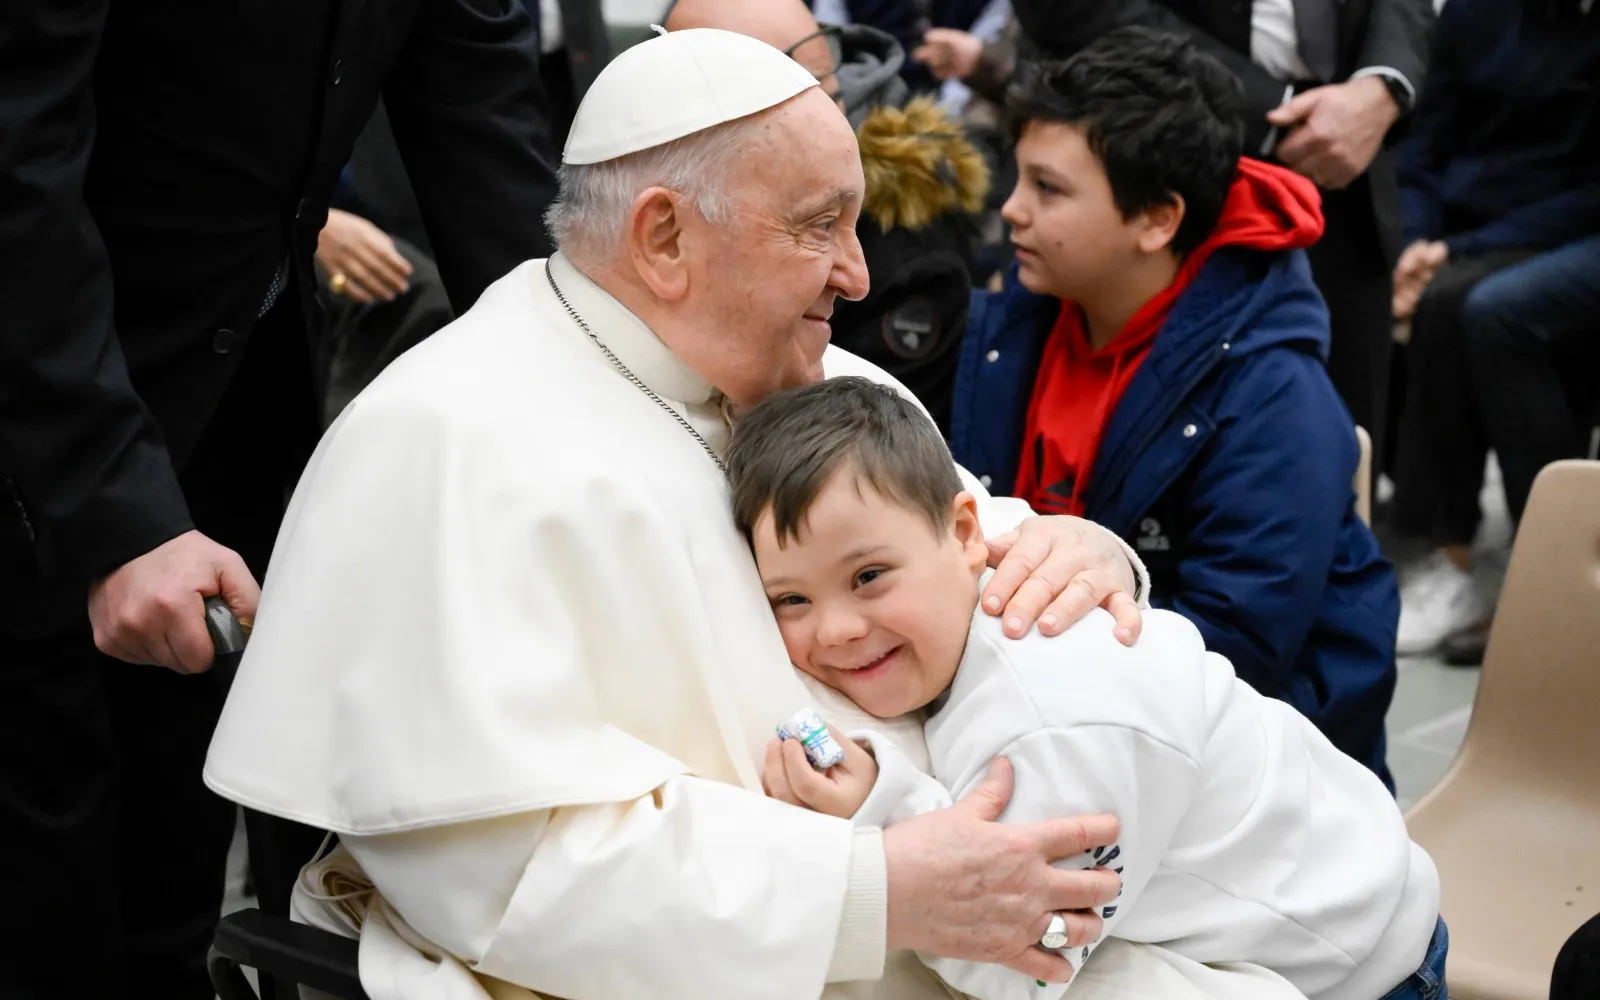 Imagen del Papa Francisco abrazando a un niño tras una Audiencia General?w=200&h=150